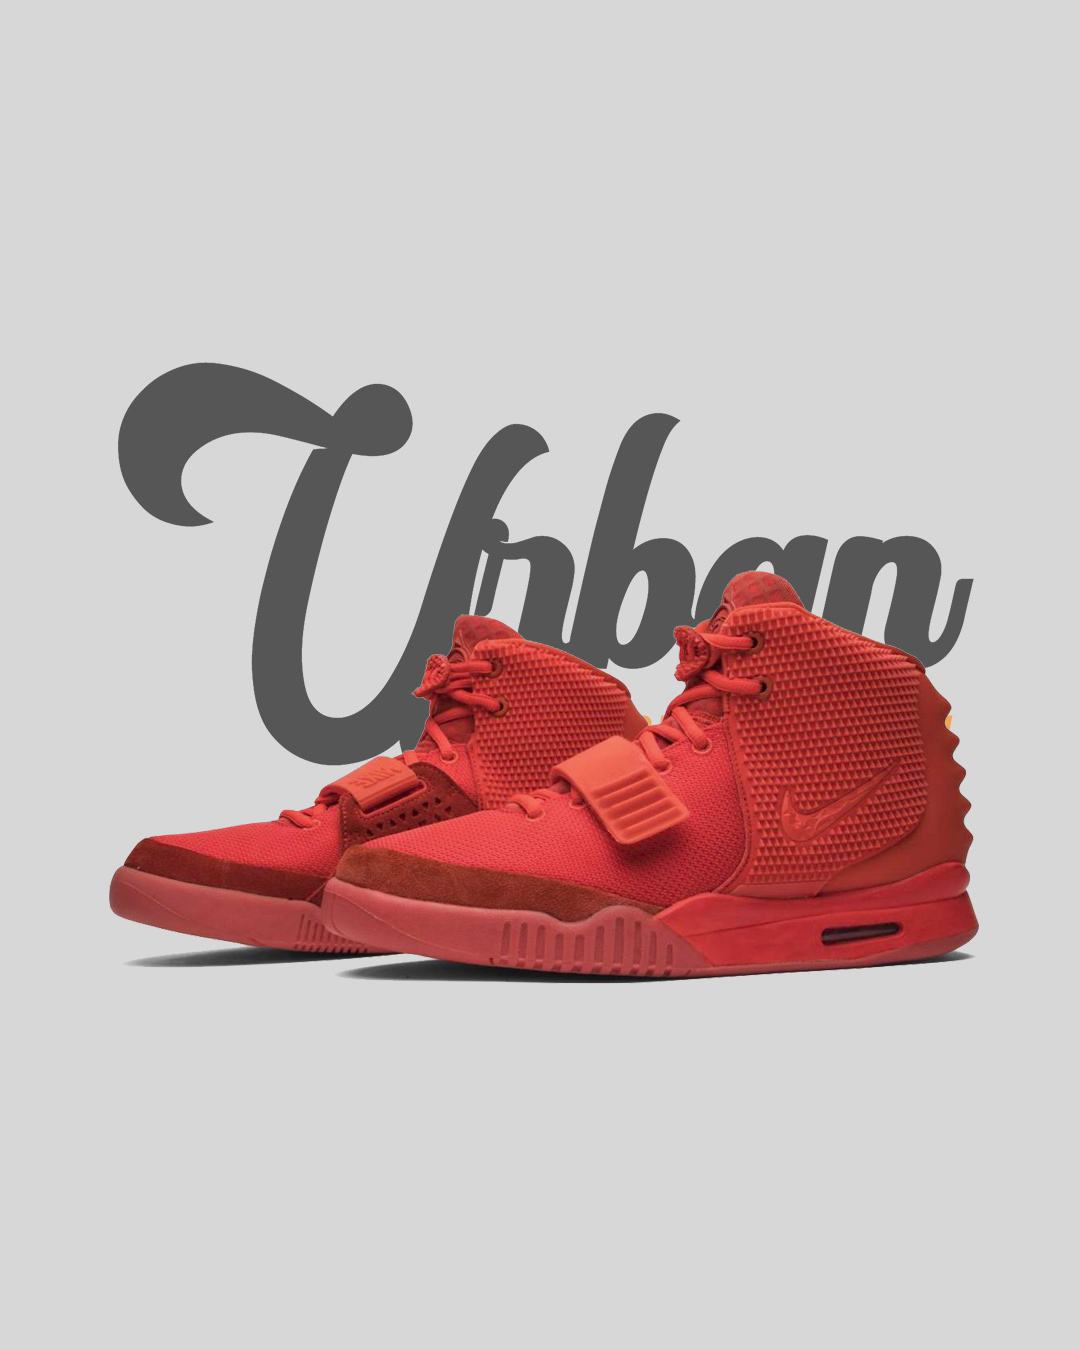 Arruinado cómo utilizar unidad Nike Air Yeezy 2 Red October – Urban Collection